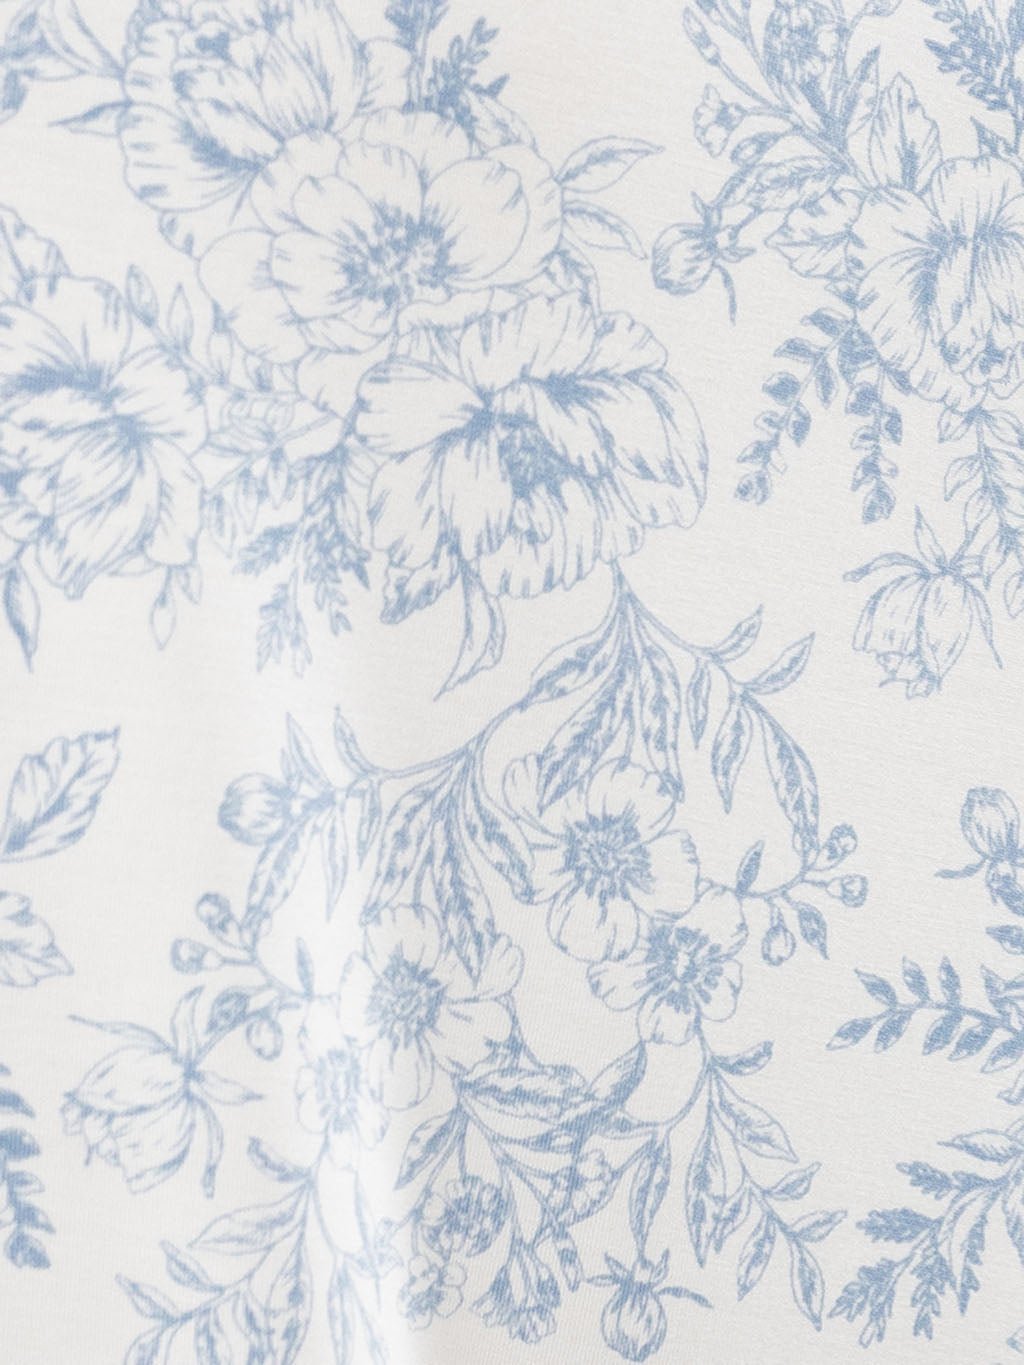 Close up of blue toile pajama fabric 